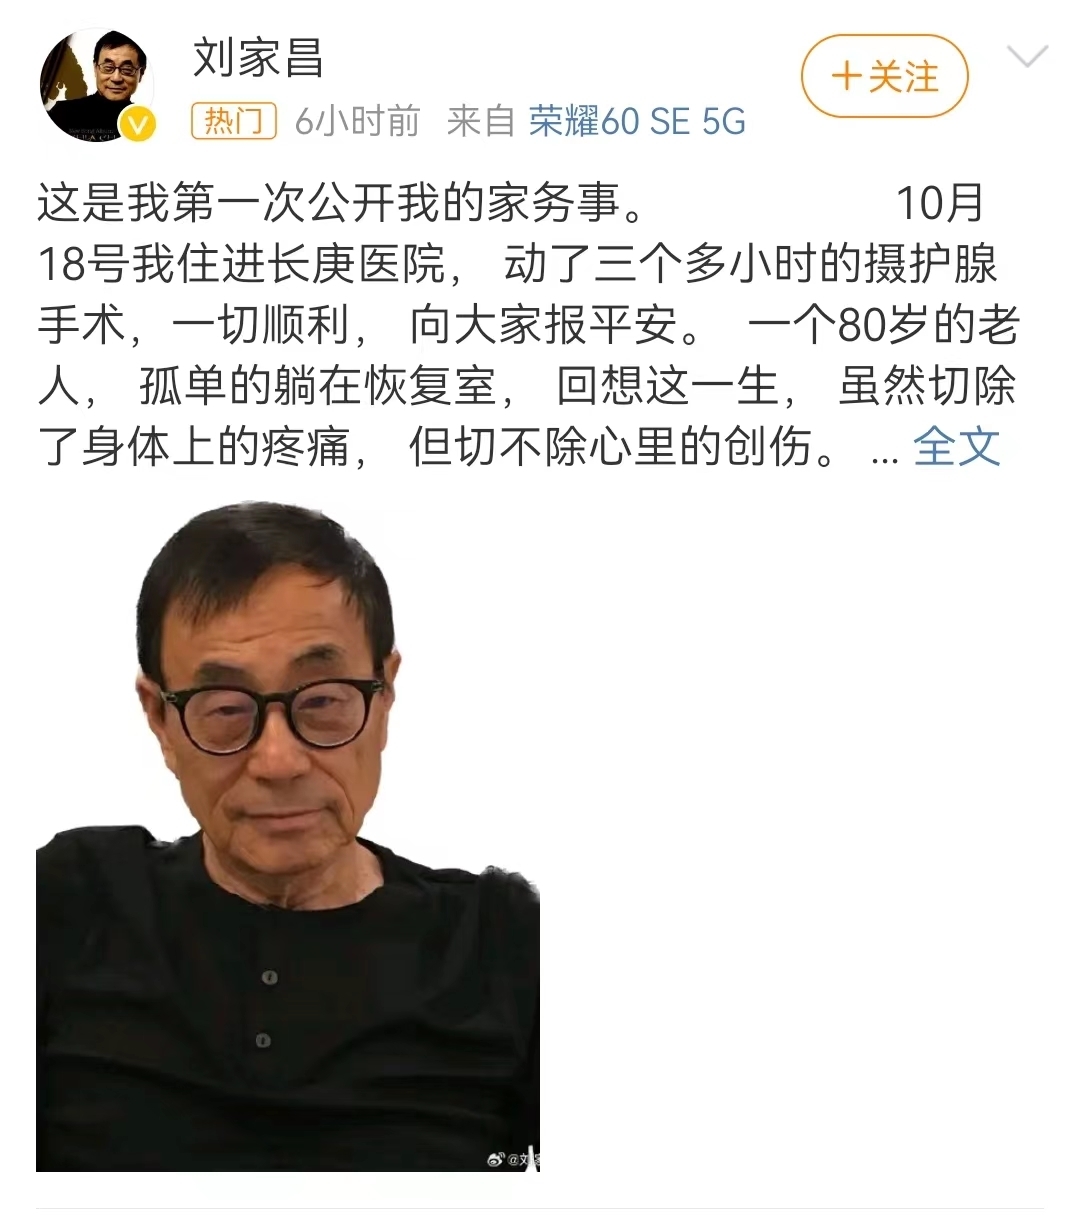 著名音乐人刘家昌对妻子提起诉讼 曝儿子曾多次被退学